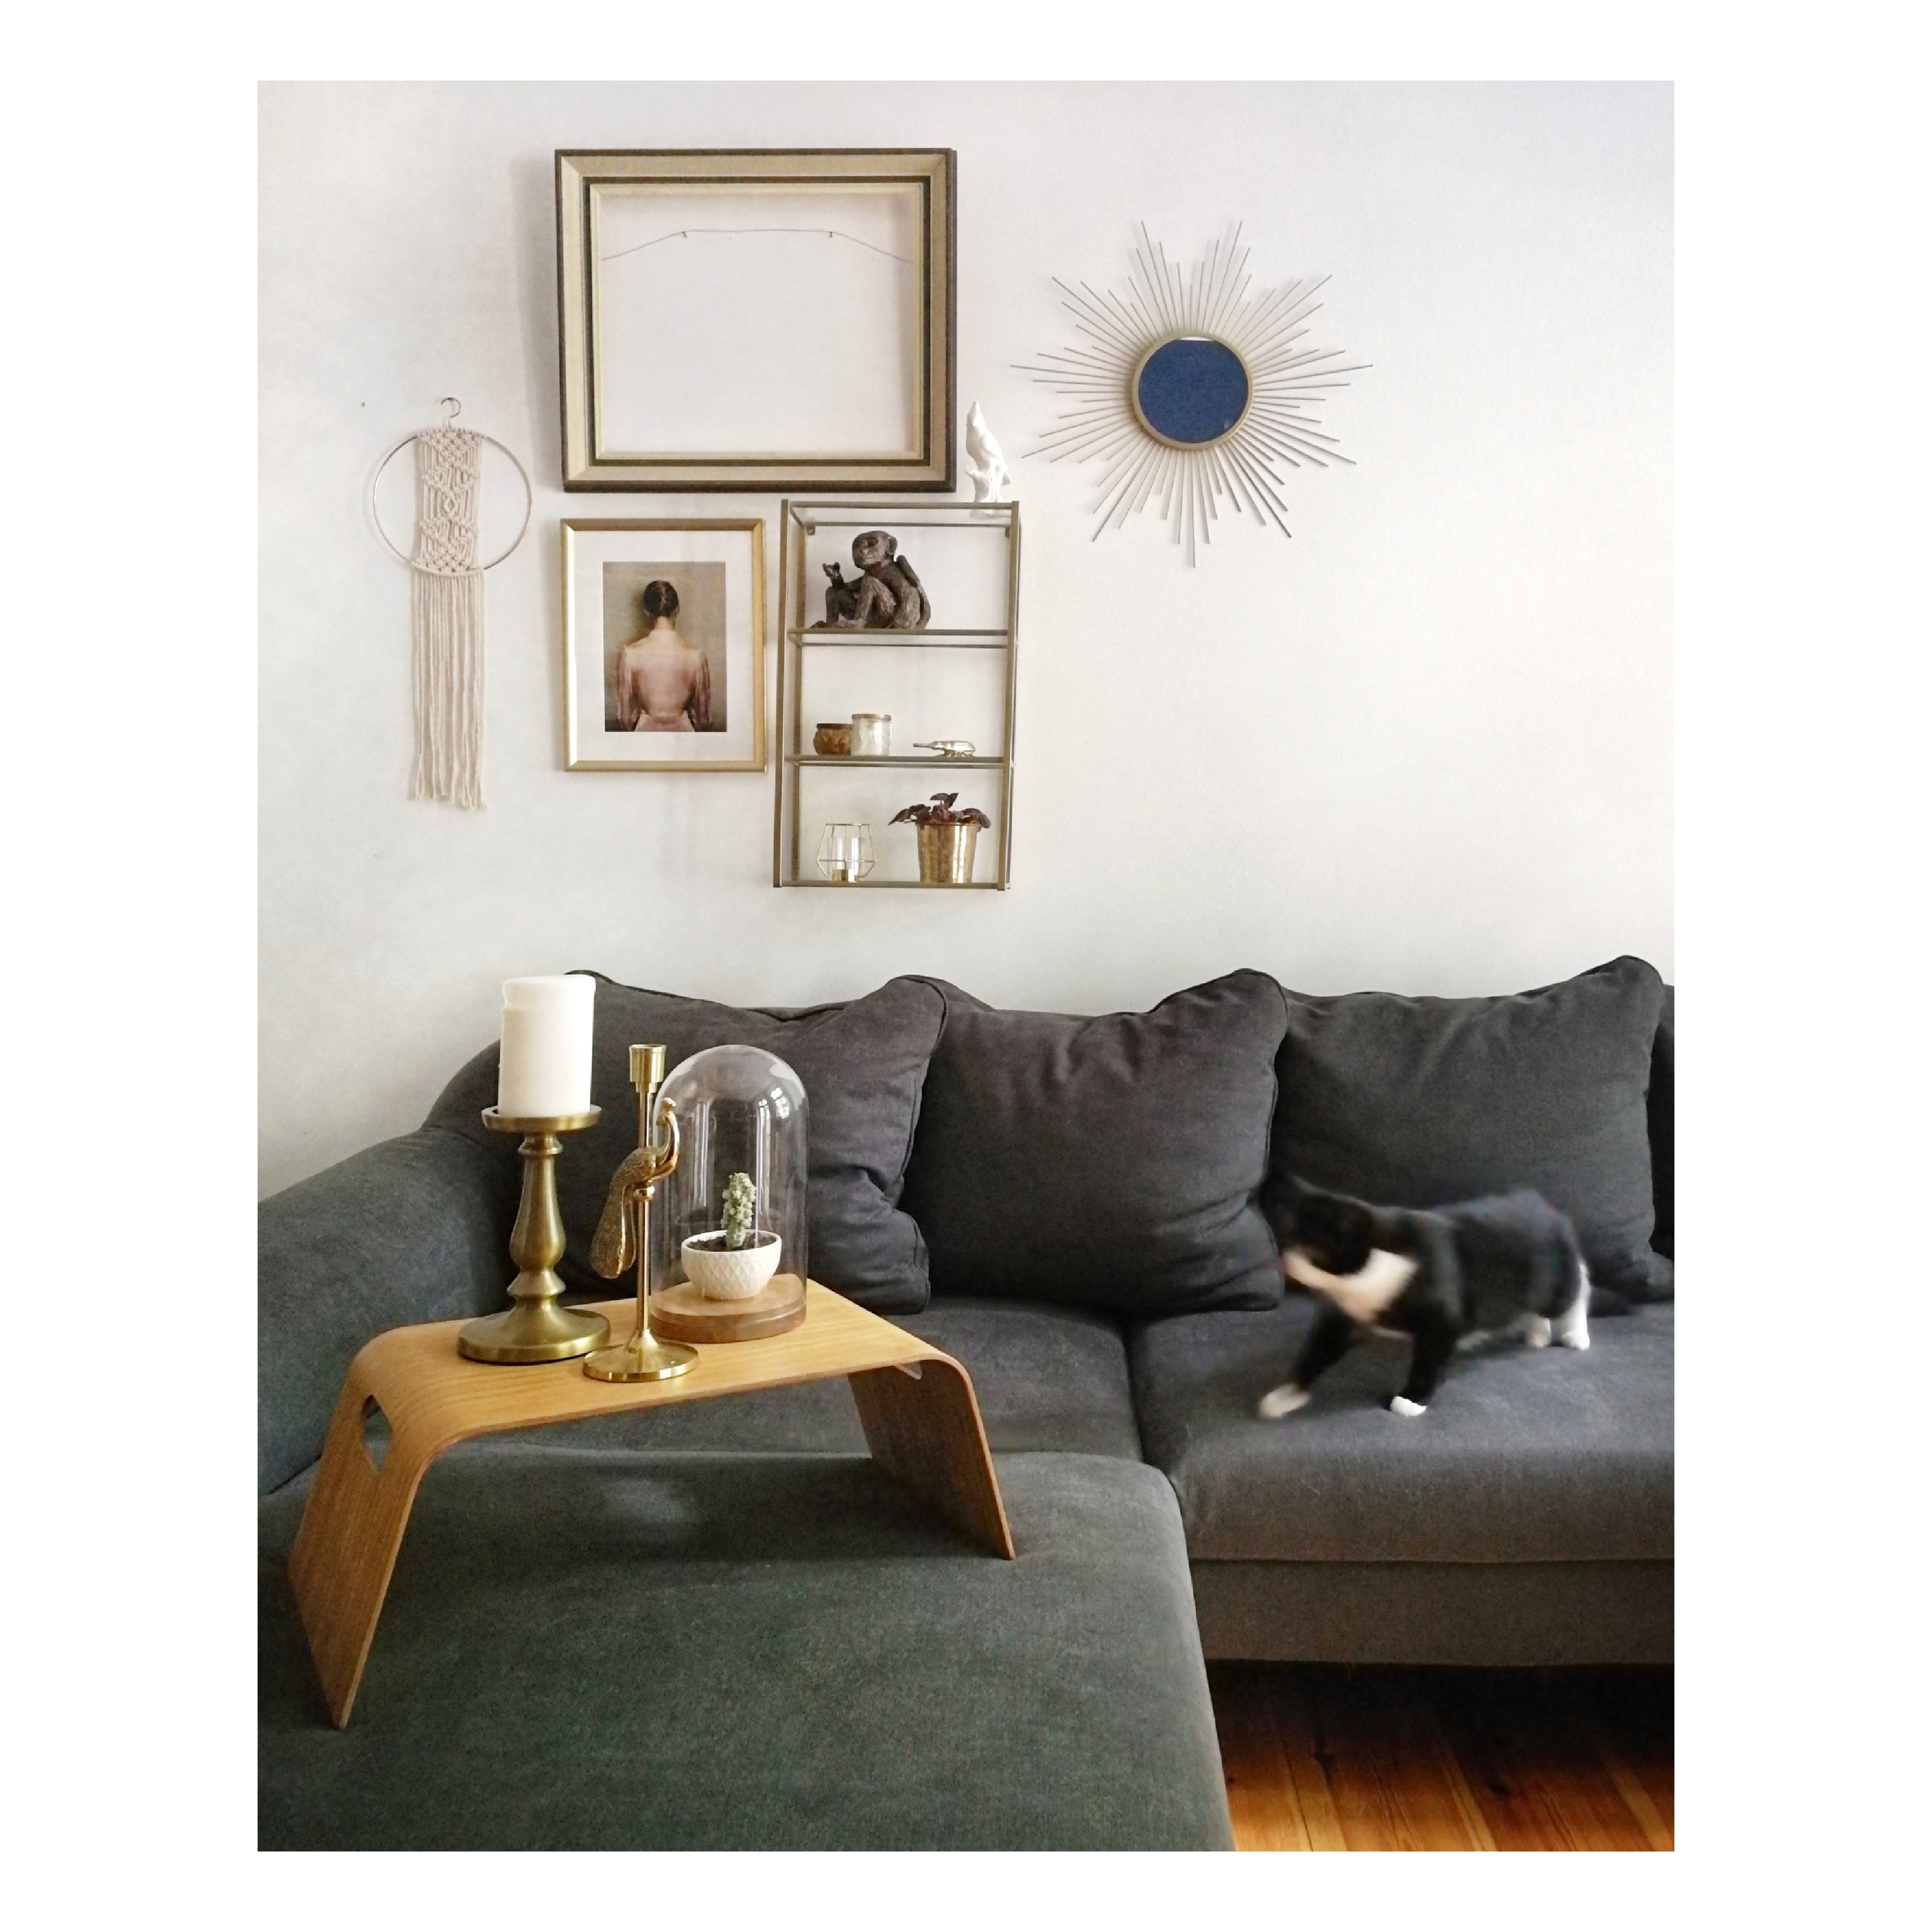 Mein geliebtes Wohnzimmer 💕
#shelfie #cat #wohnzimmer #macrame #sonnenspiegel 